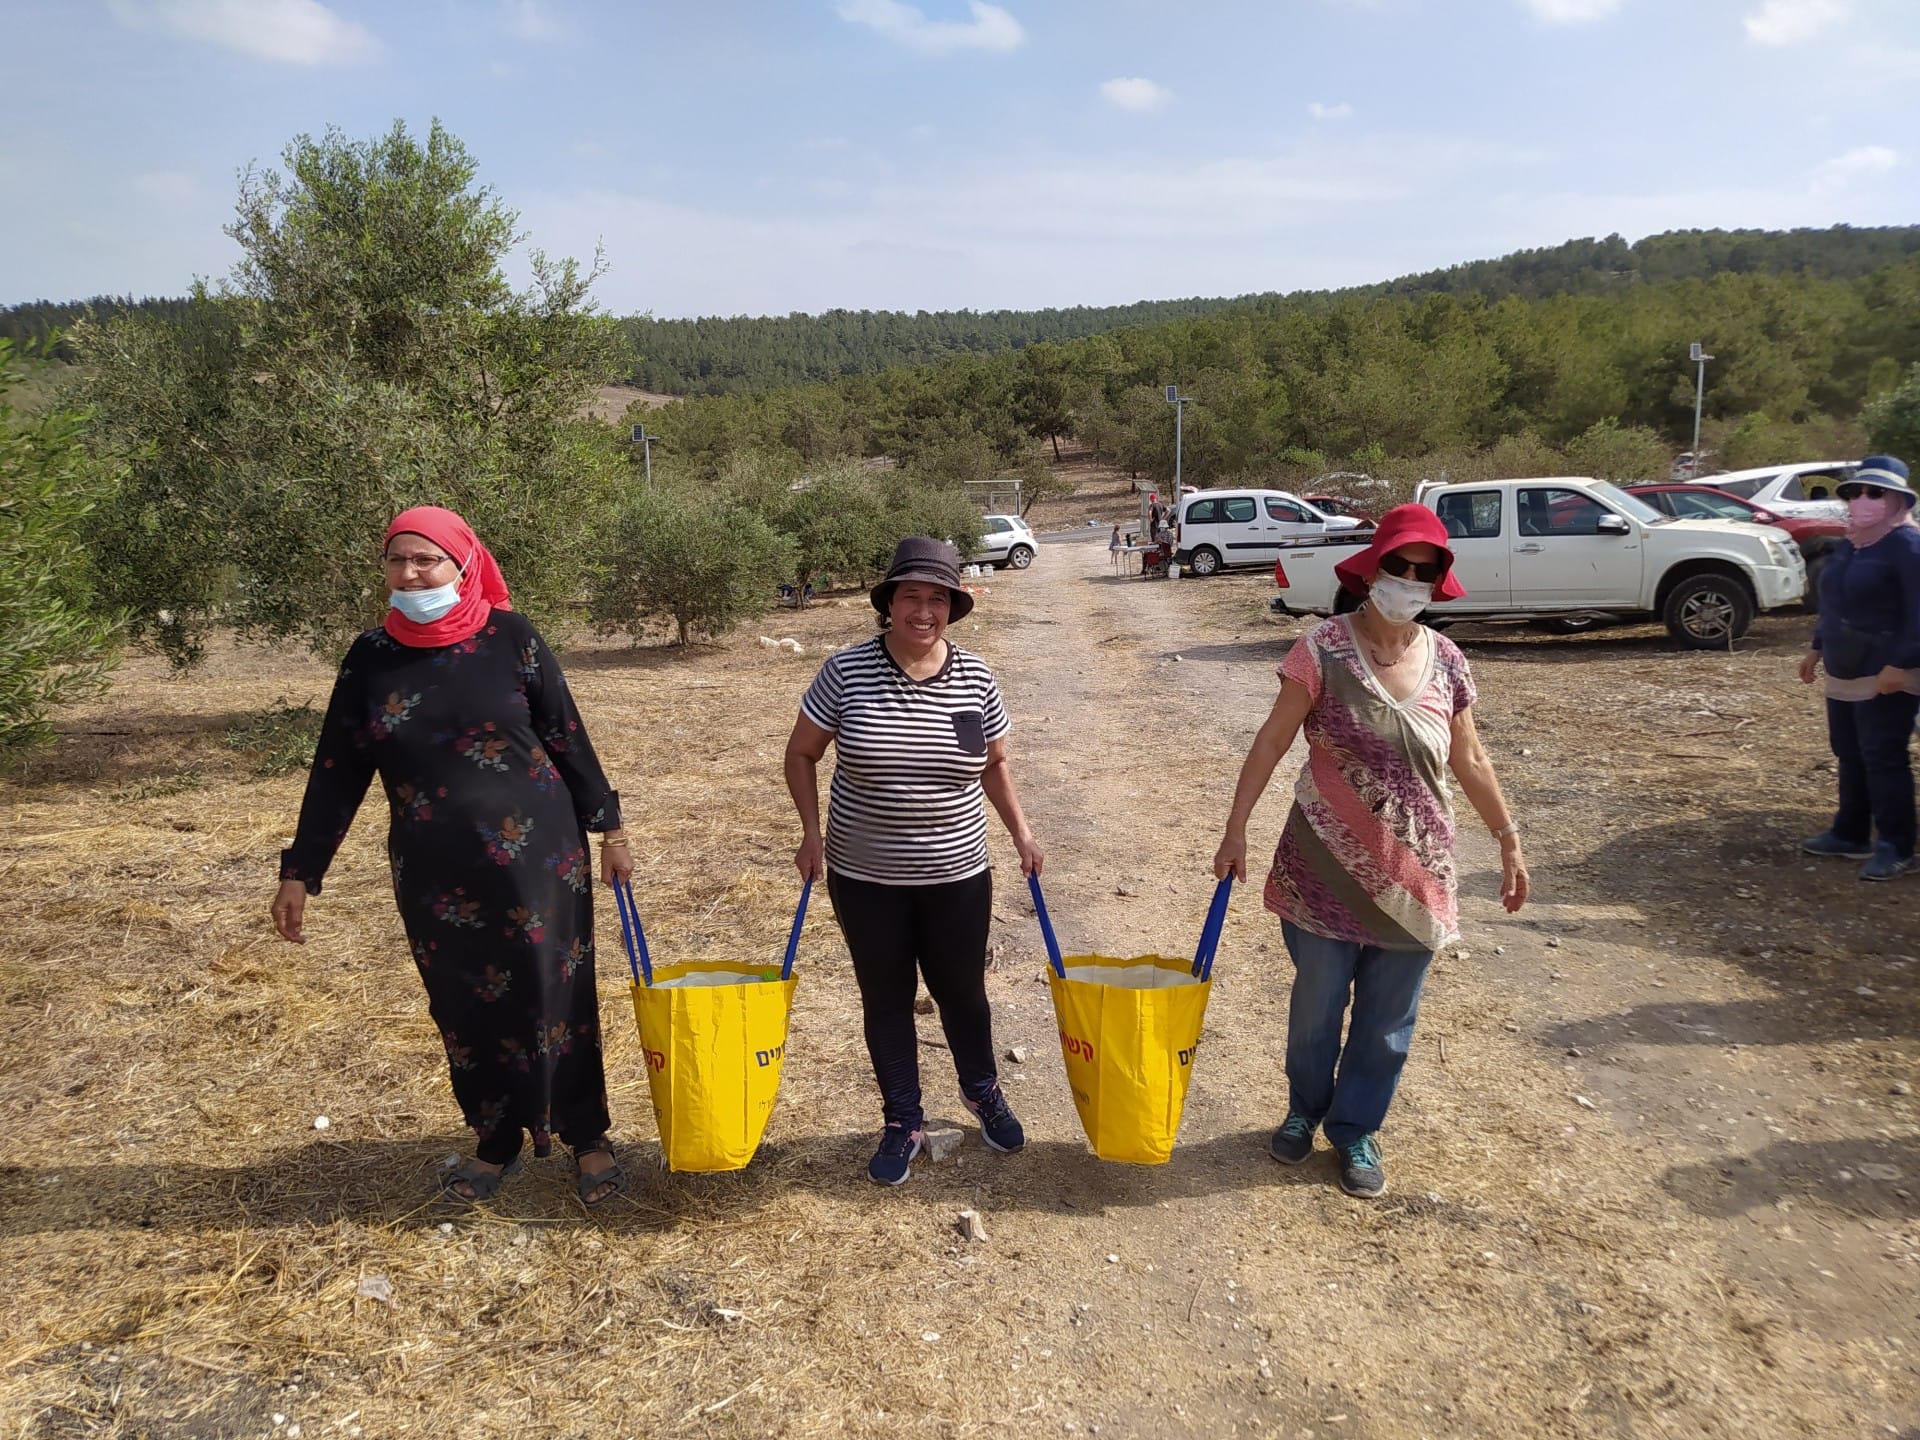 afrika-nahost-profile-die-palästinenser-und-israelis-durch-die-olivenölproduktion-olivenölzeiten-zusammenbringen